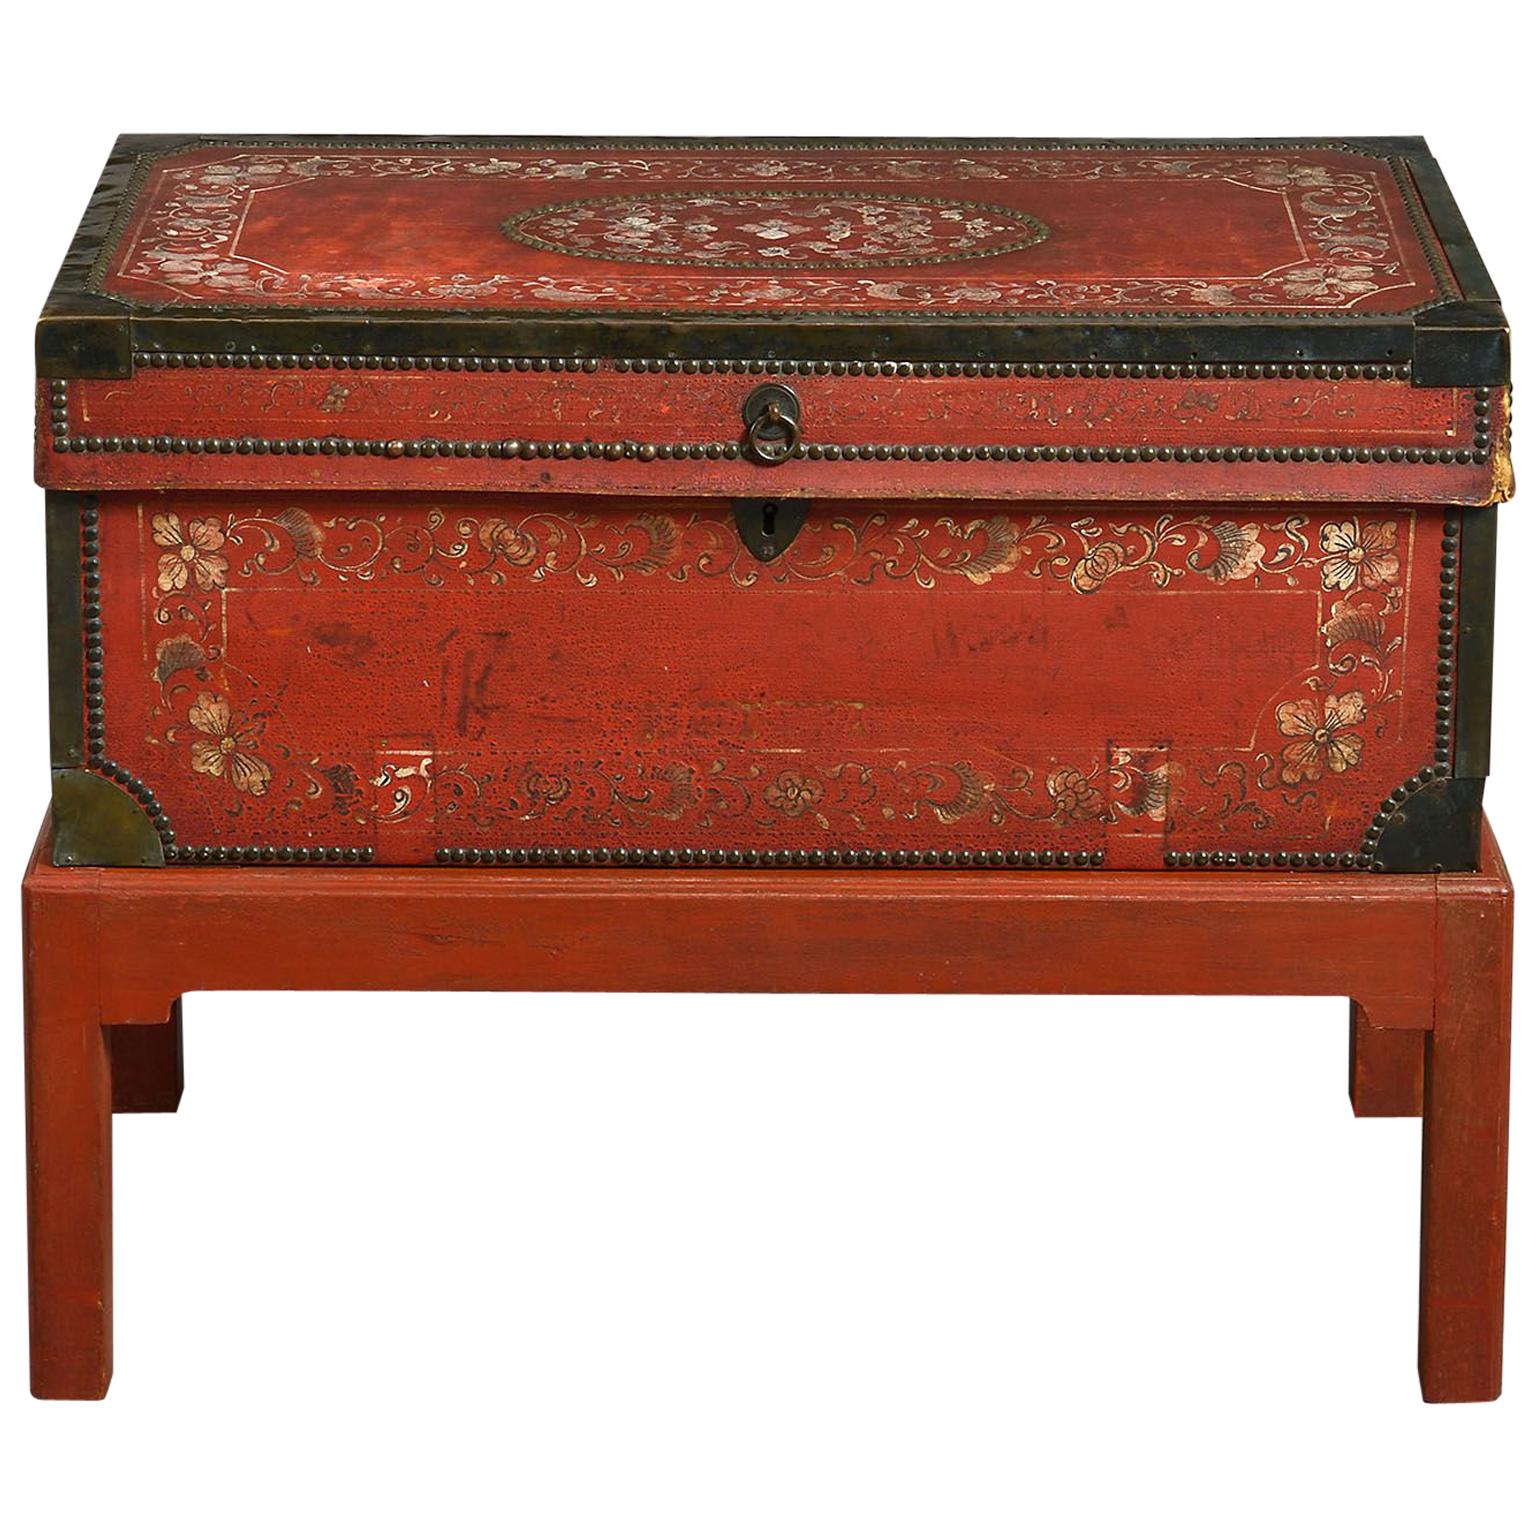 Coffre en cuir peint d'exportation chinoise du 18ème siècle